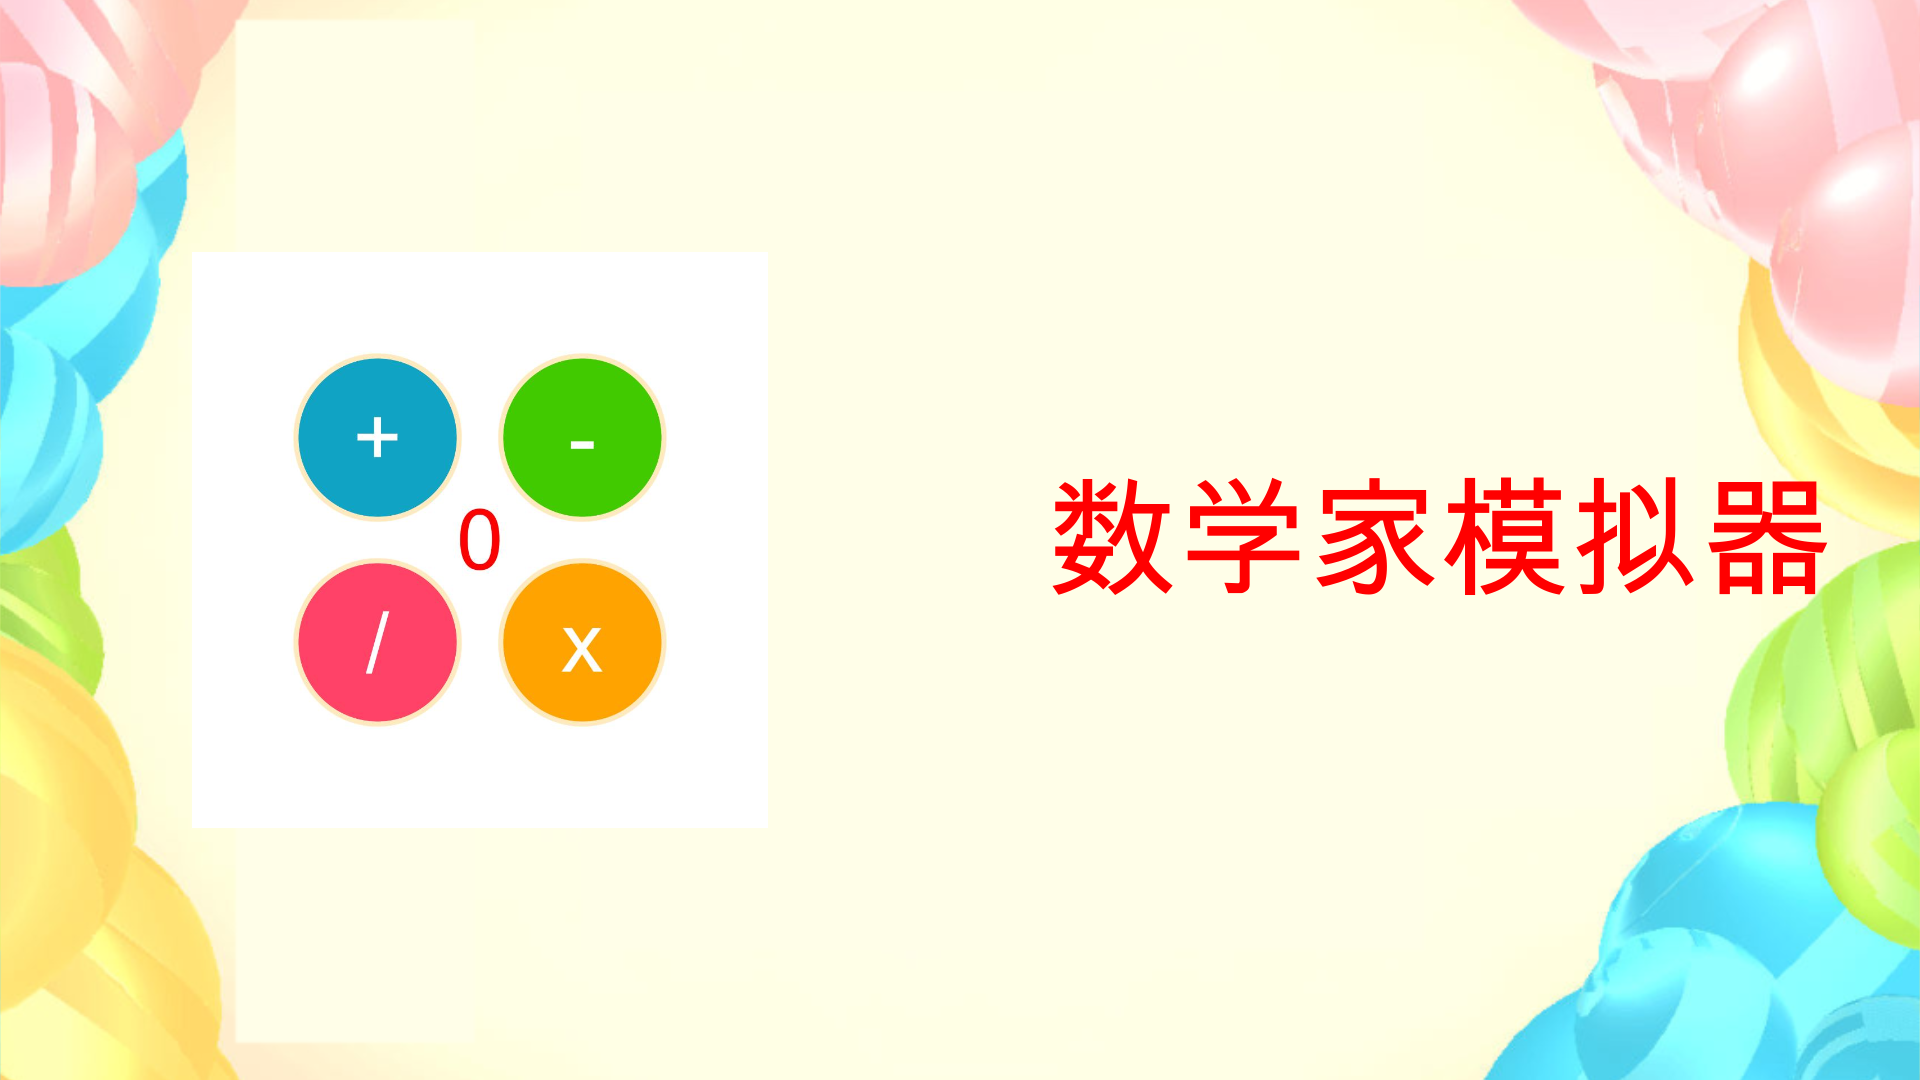 Banner of 数学者シミュレーター 1.9.2